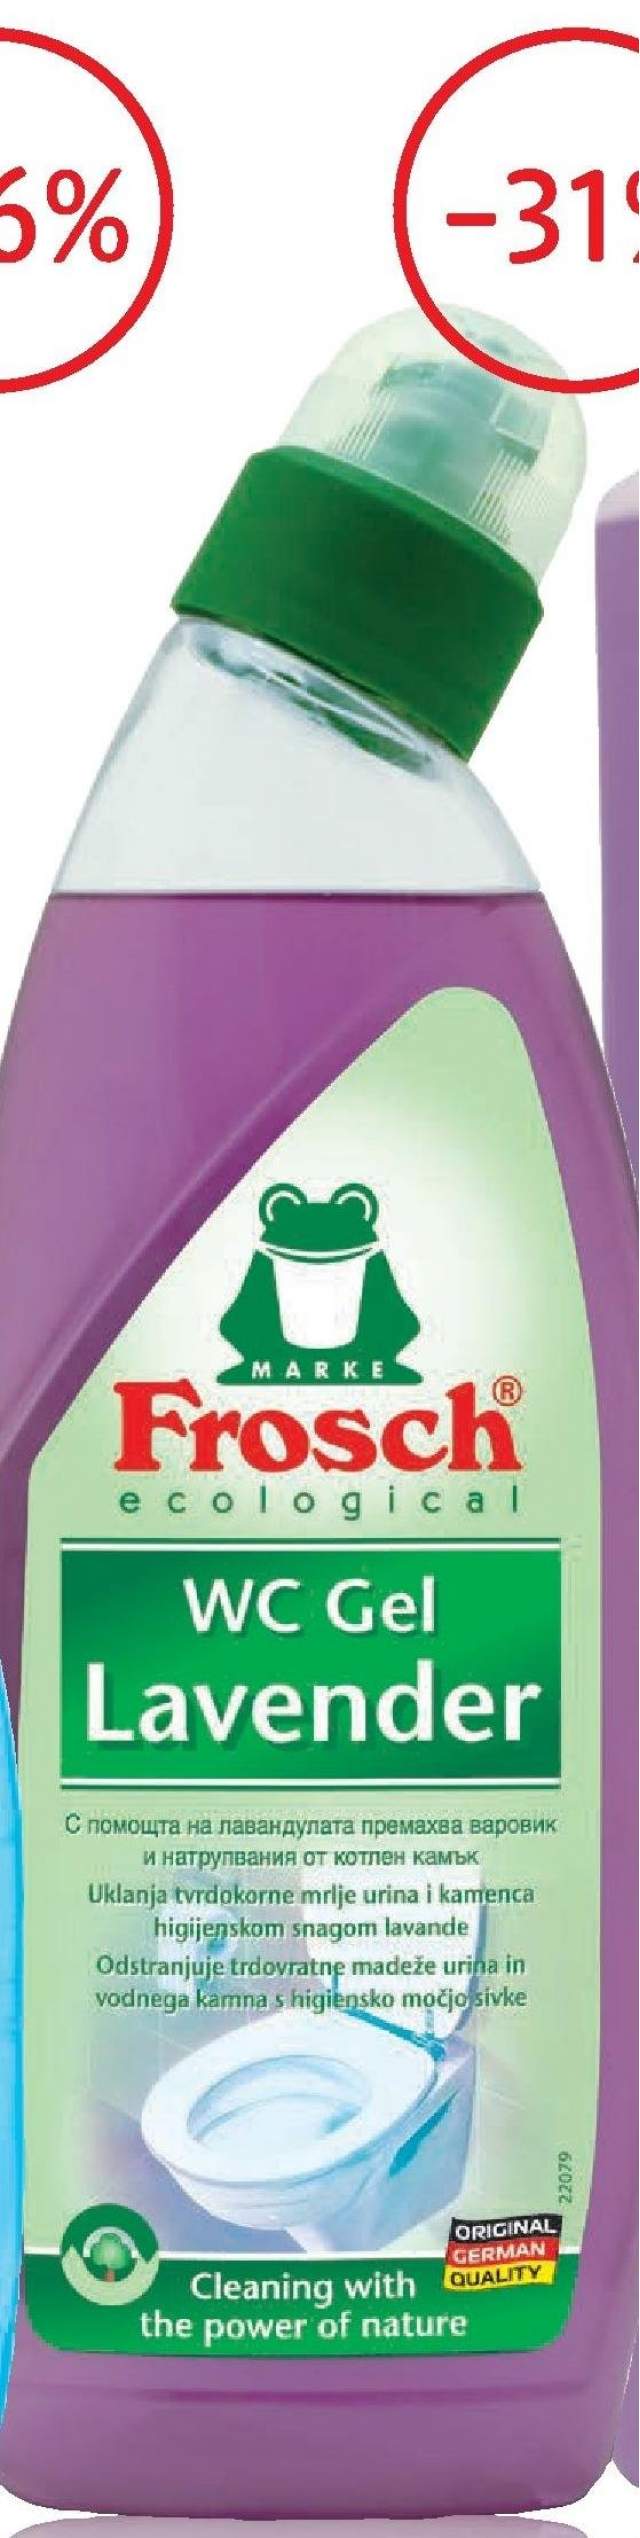 Solutie de curatat toaleta cu lavanda Frosch